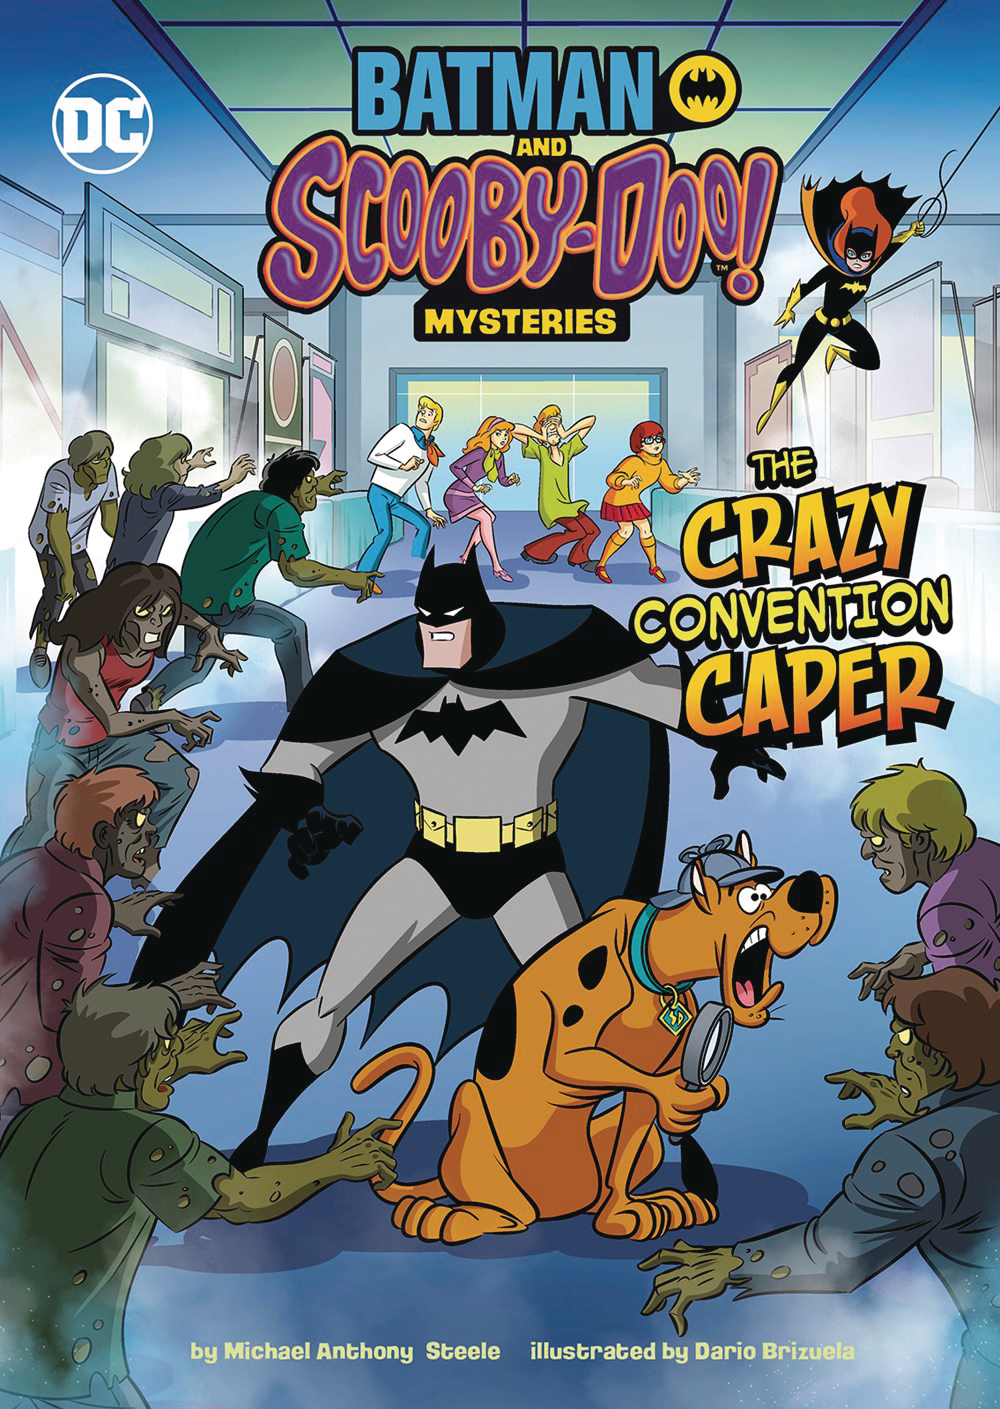 Batman Scooby Doo Mysteries #4 Crazy Convention Caper